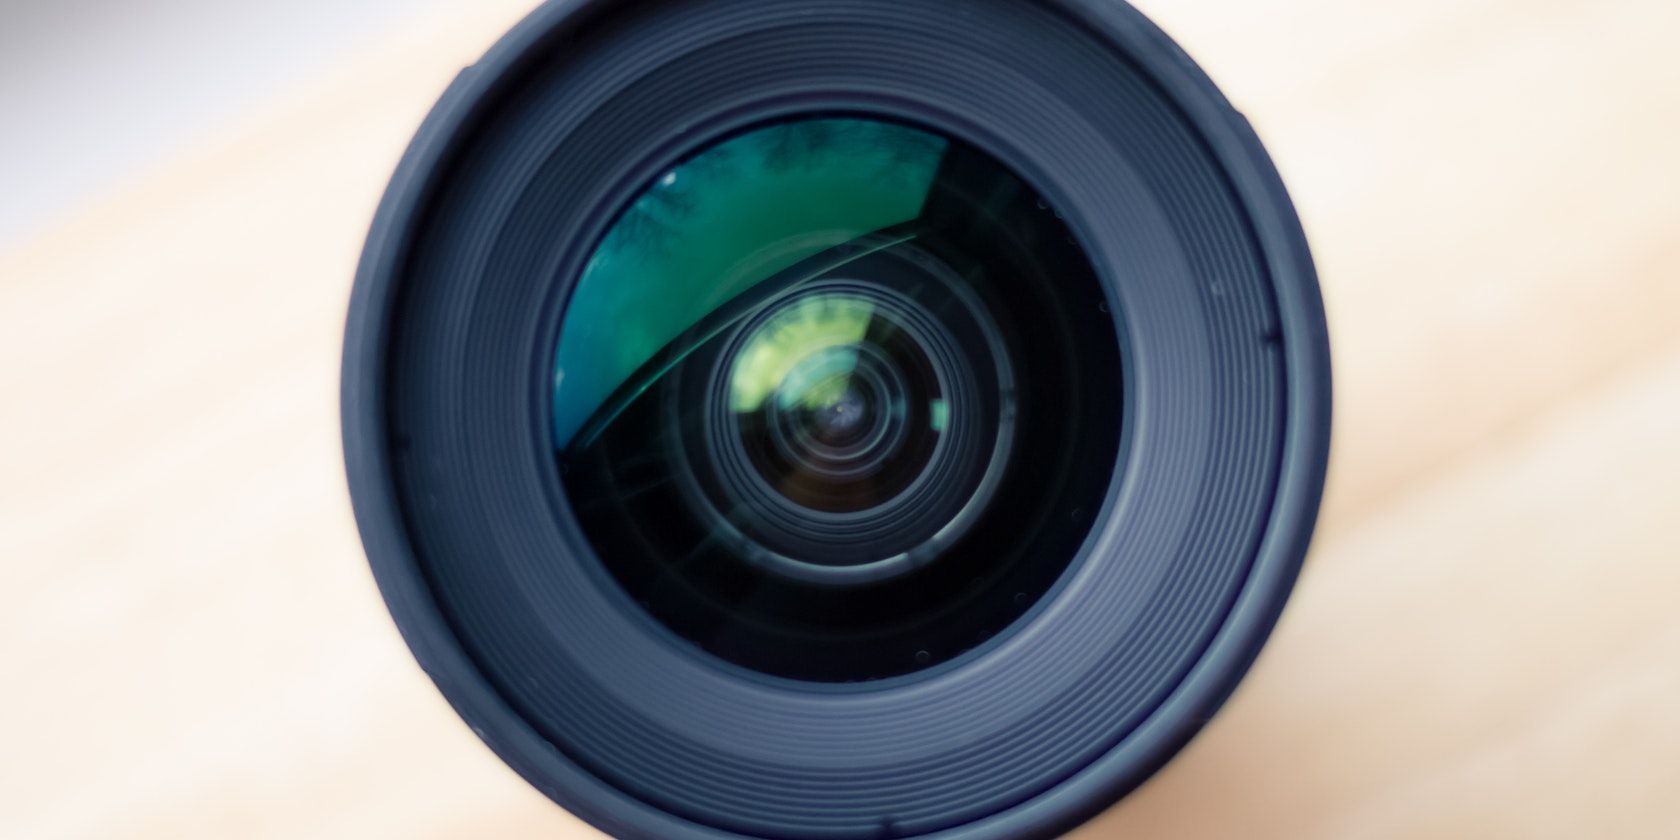 A black camera lens